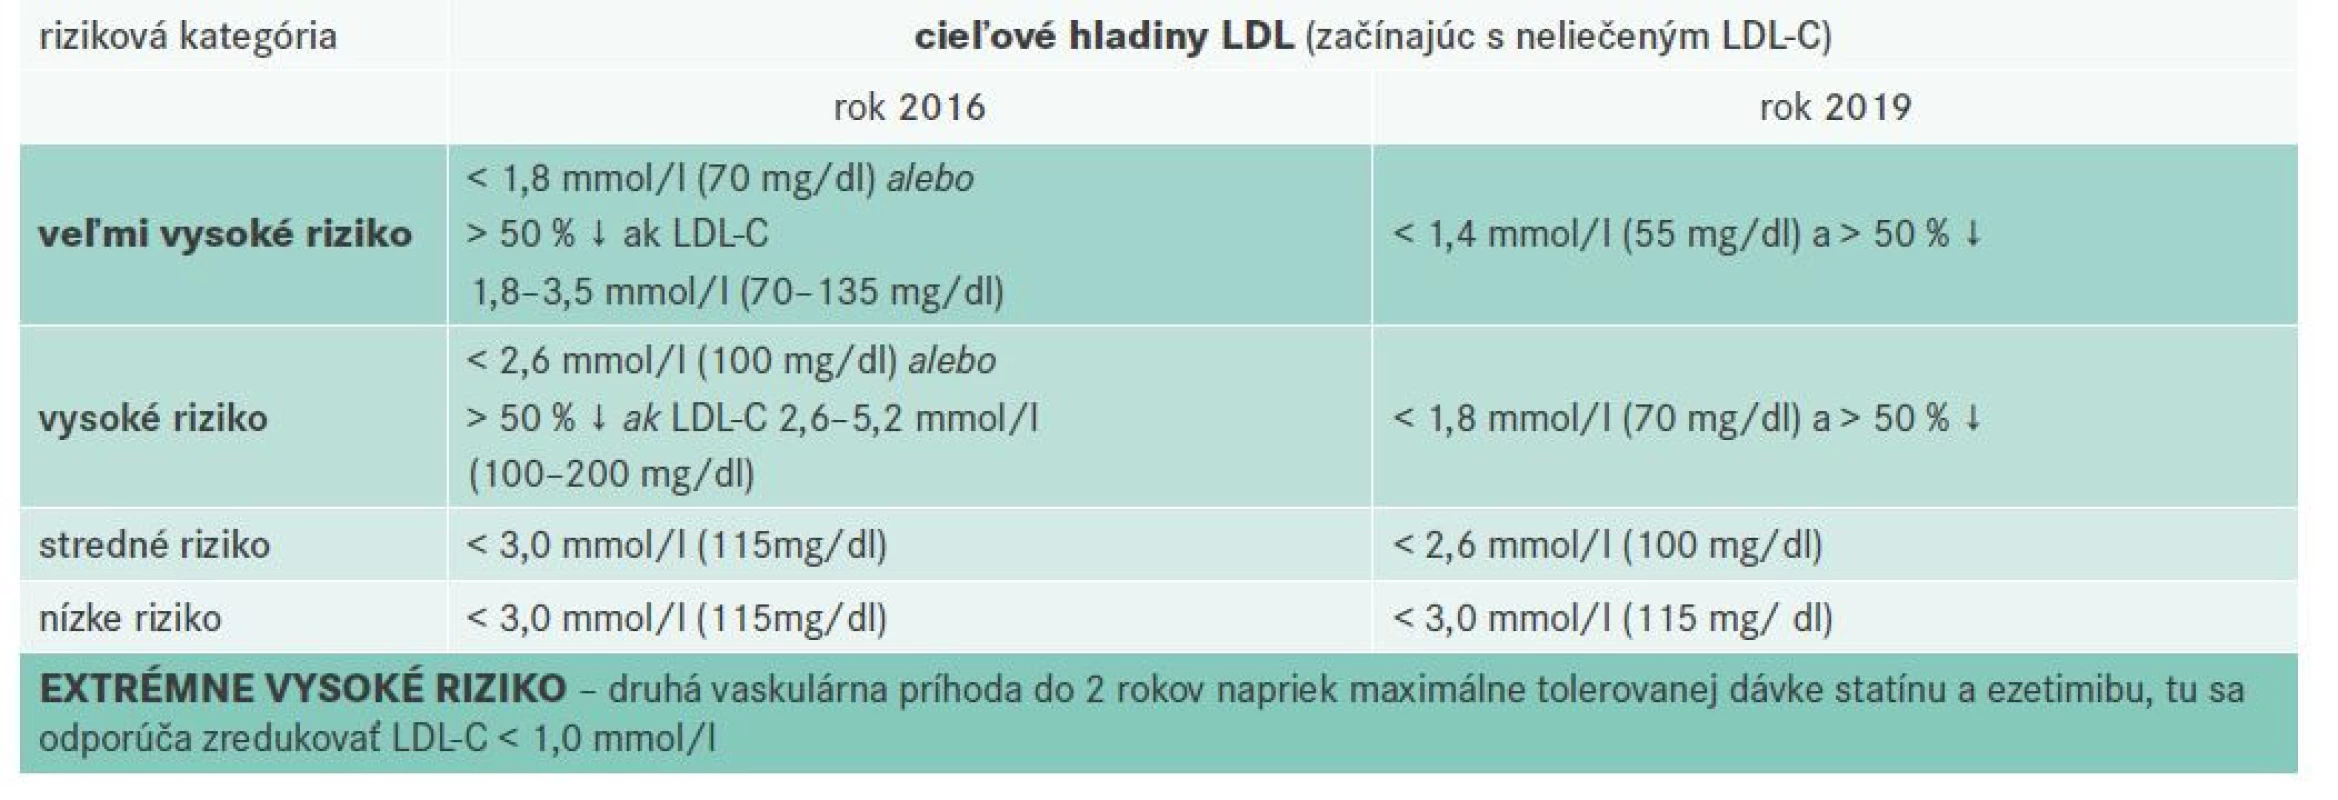 Zmena cieľových hodnôt pre LDL-cholesterol od roku 2016 po rok 2019 pre jednotlivé rizikové kategórie
podľa Odporúčaní EAS/ESC. Upravené podľa [2]